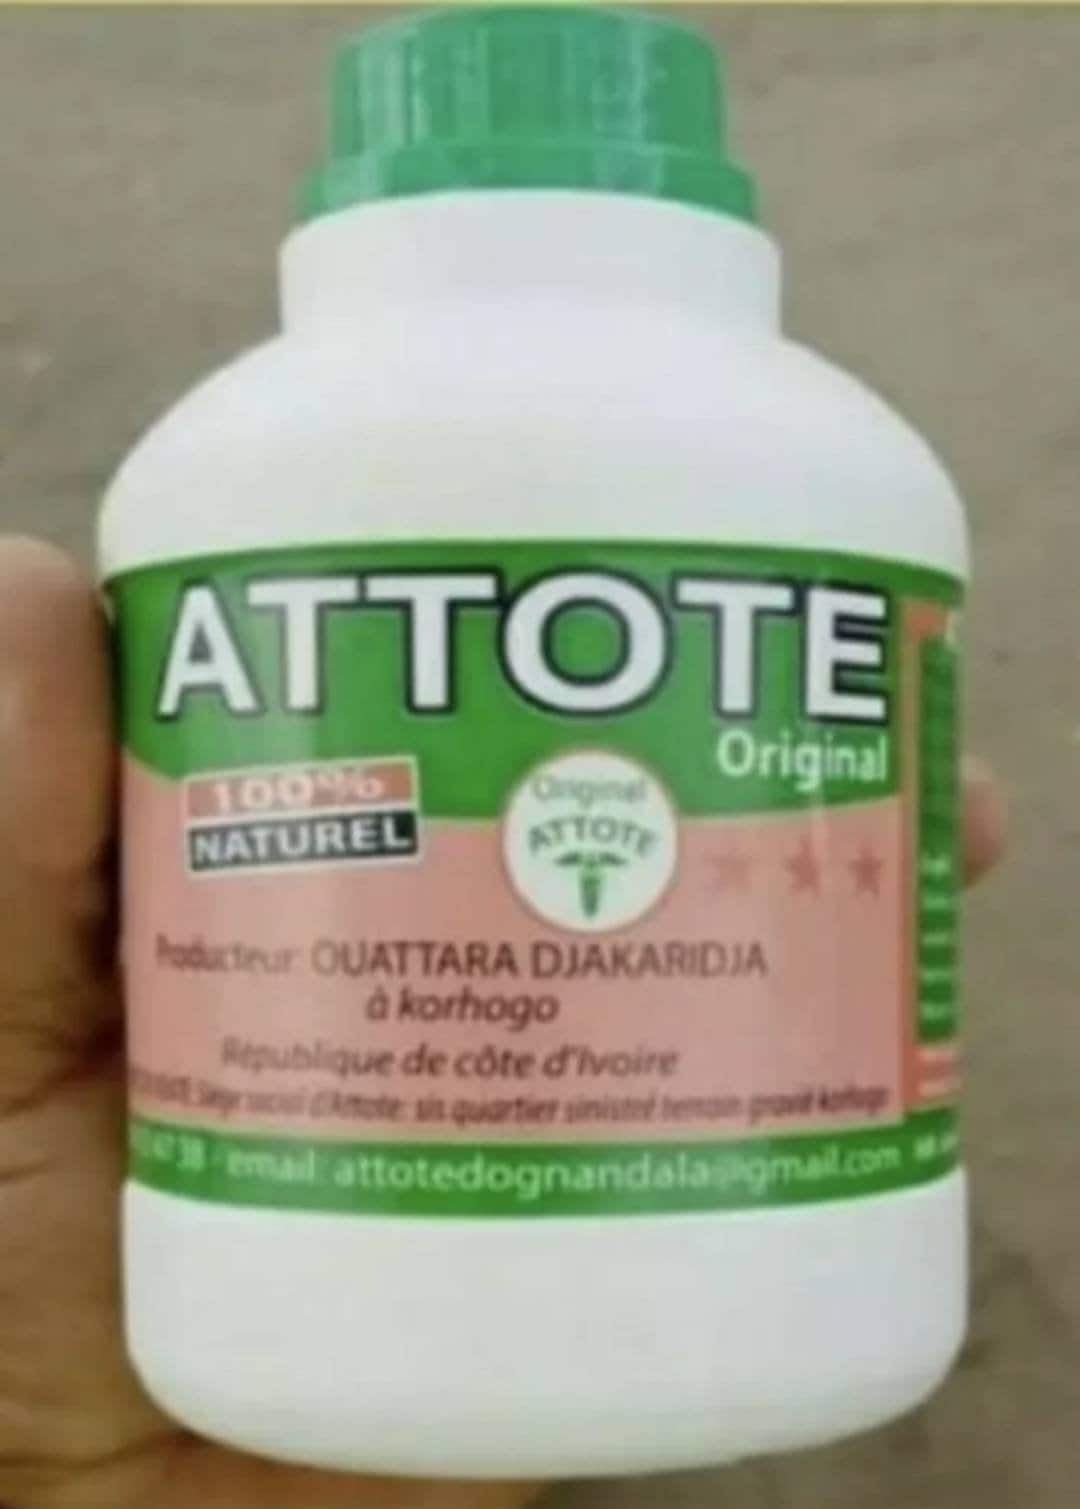 Attote 1 Bottle 